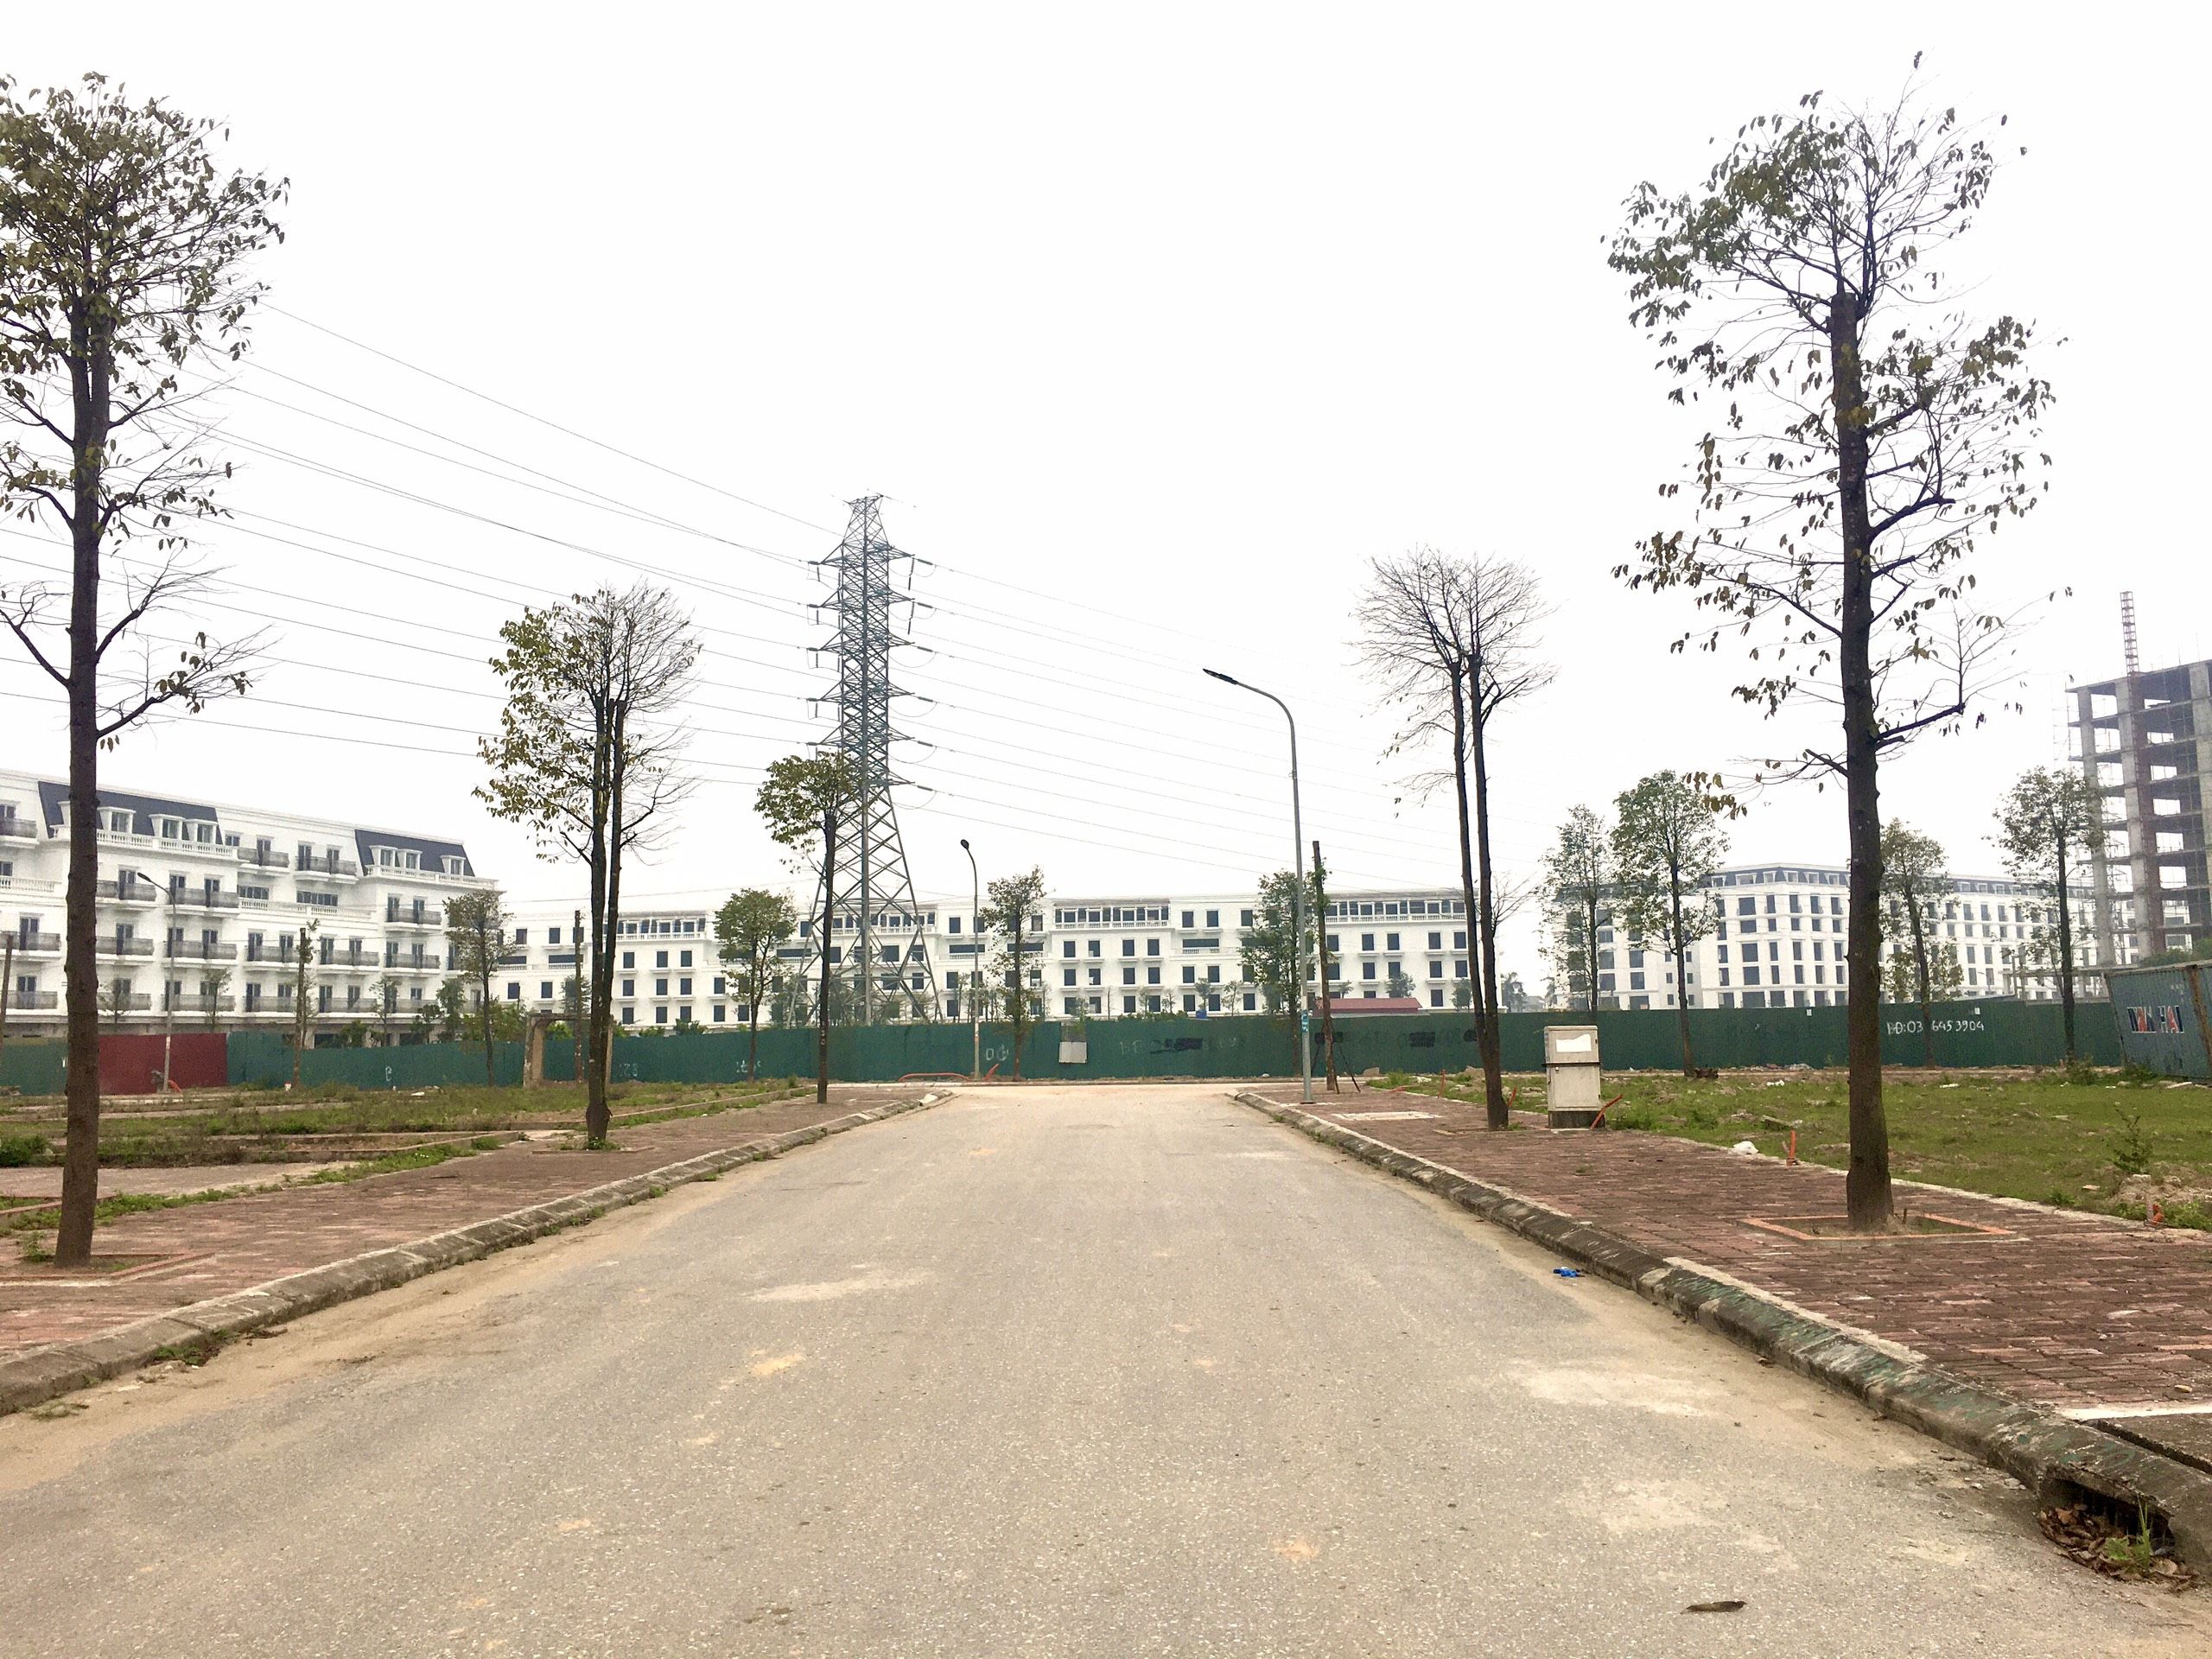 Mua Bán Nhà Đất, Bất Động Sản Tại Huyện Yên Phong, Bắc Ninh